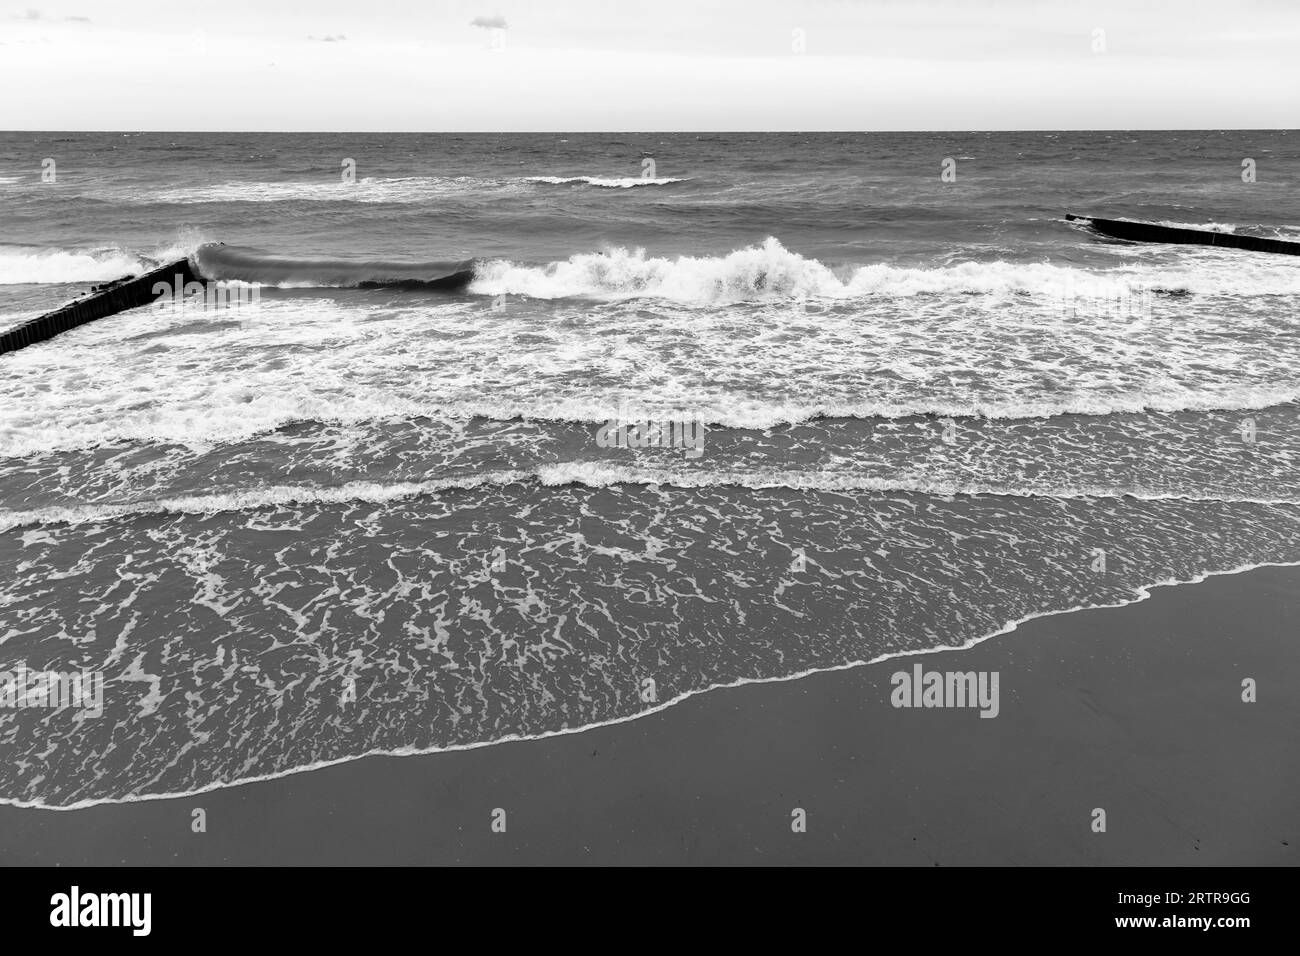 Blick auf den Strand mit Uferwasser und Wellenbrechern, Schwarzweißfoto. Landschaftsbild der Ostseeküste. Zelenogradsk, Oblast Kaliningrad, Russland Stockfoto